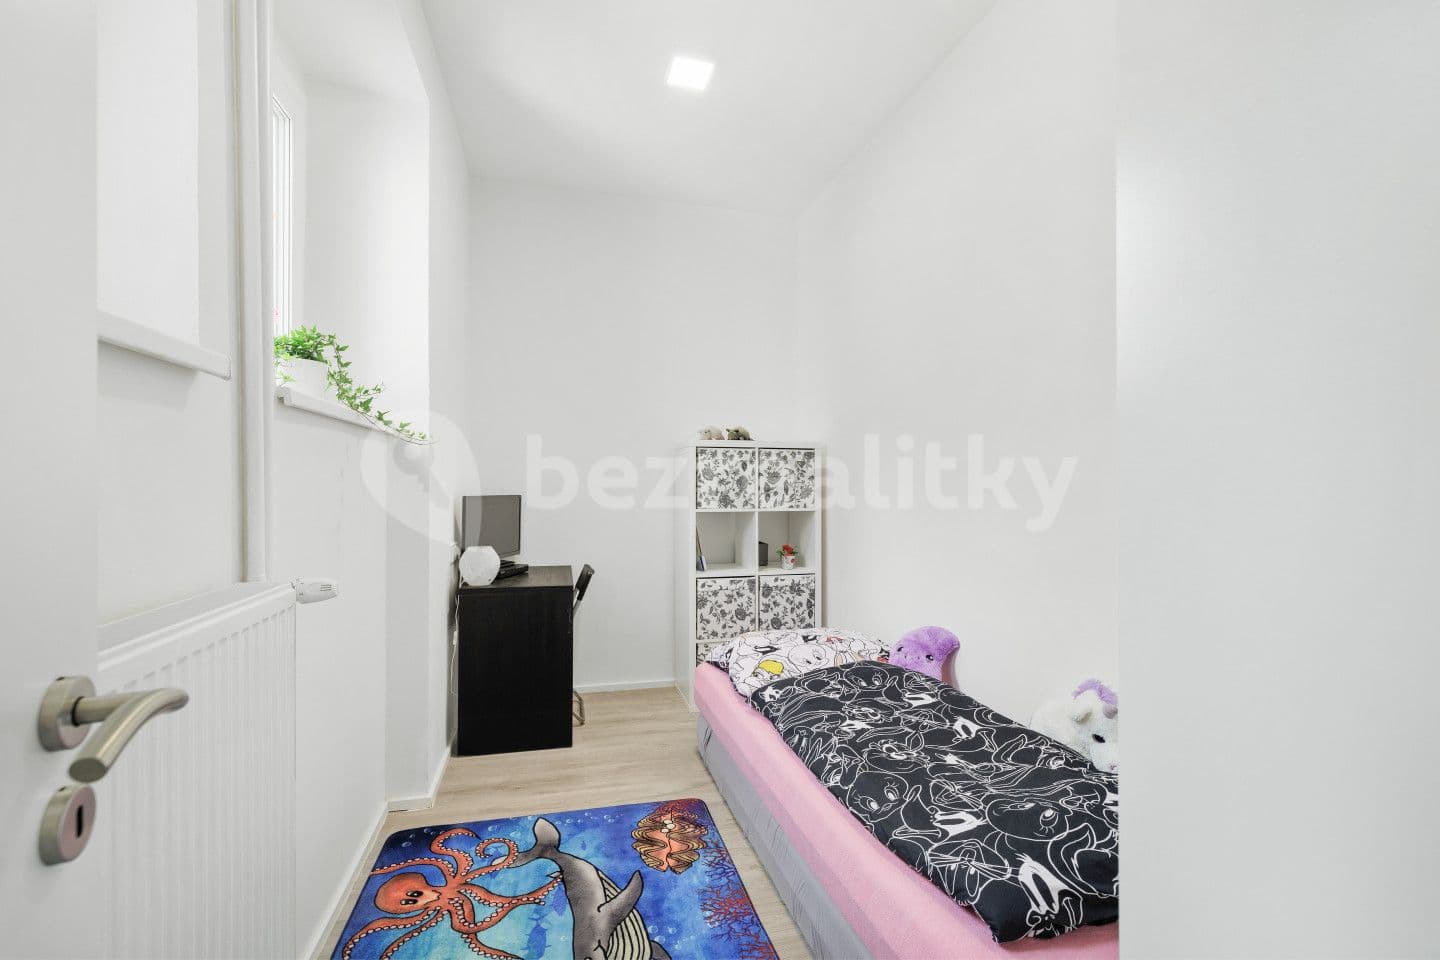 2 bedroom with open-plan kitchen flat for sale, 33 m², Krčínova, Kolín, Středočeský Region